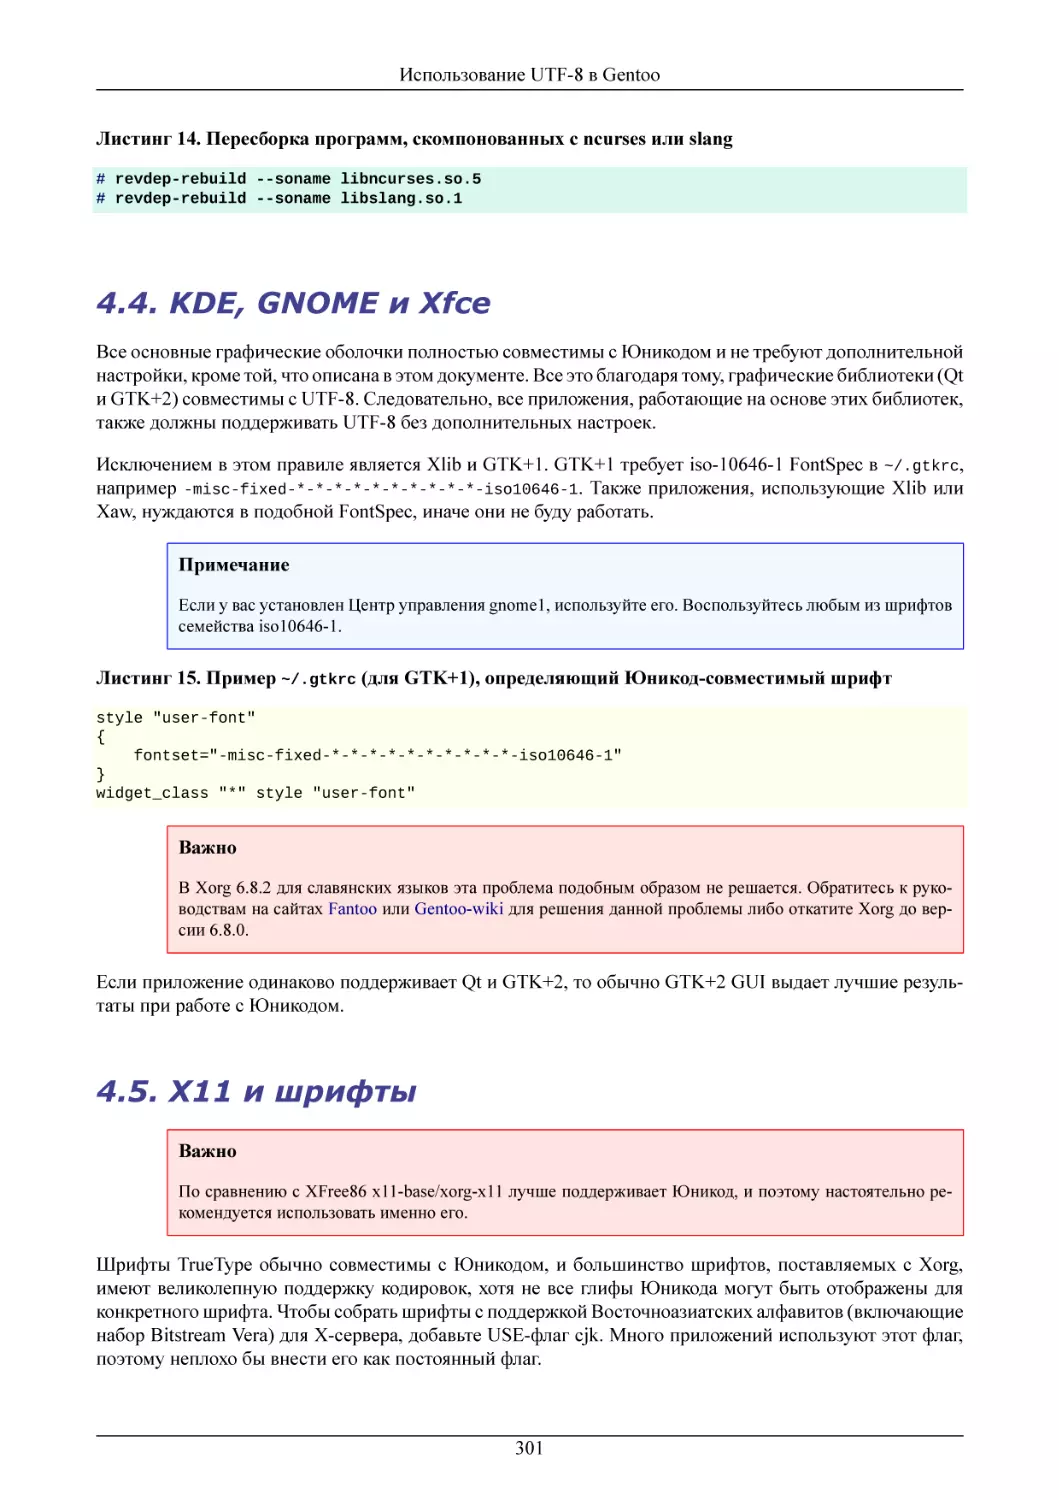 KDE, GNOME и Xfce
X11 и шрифты